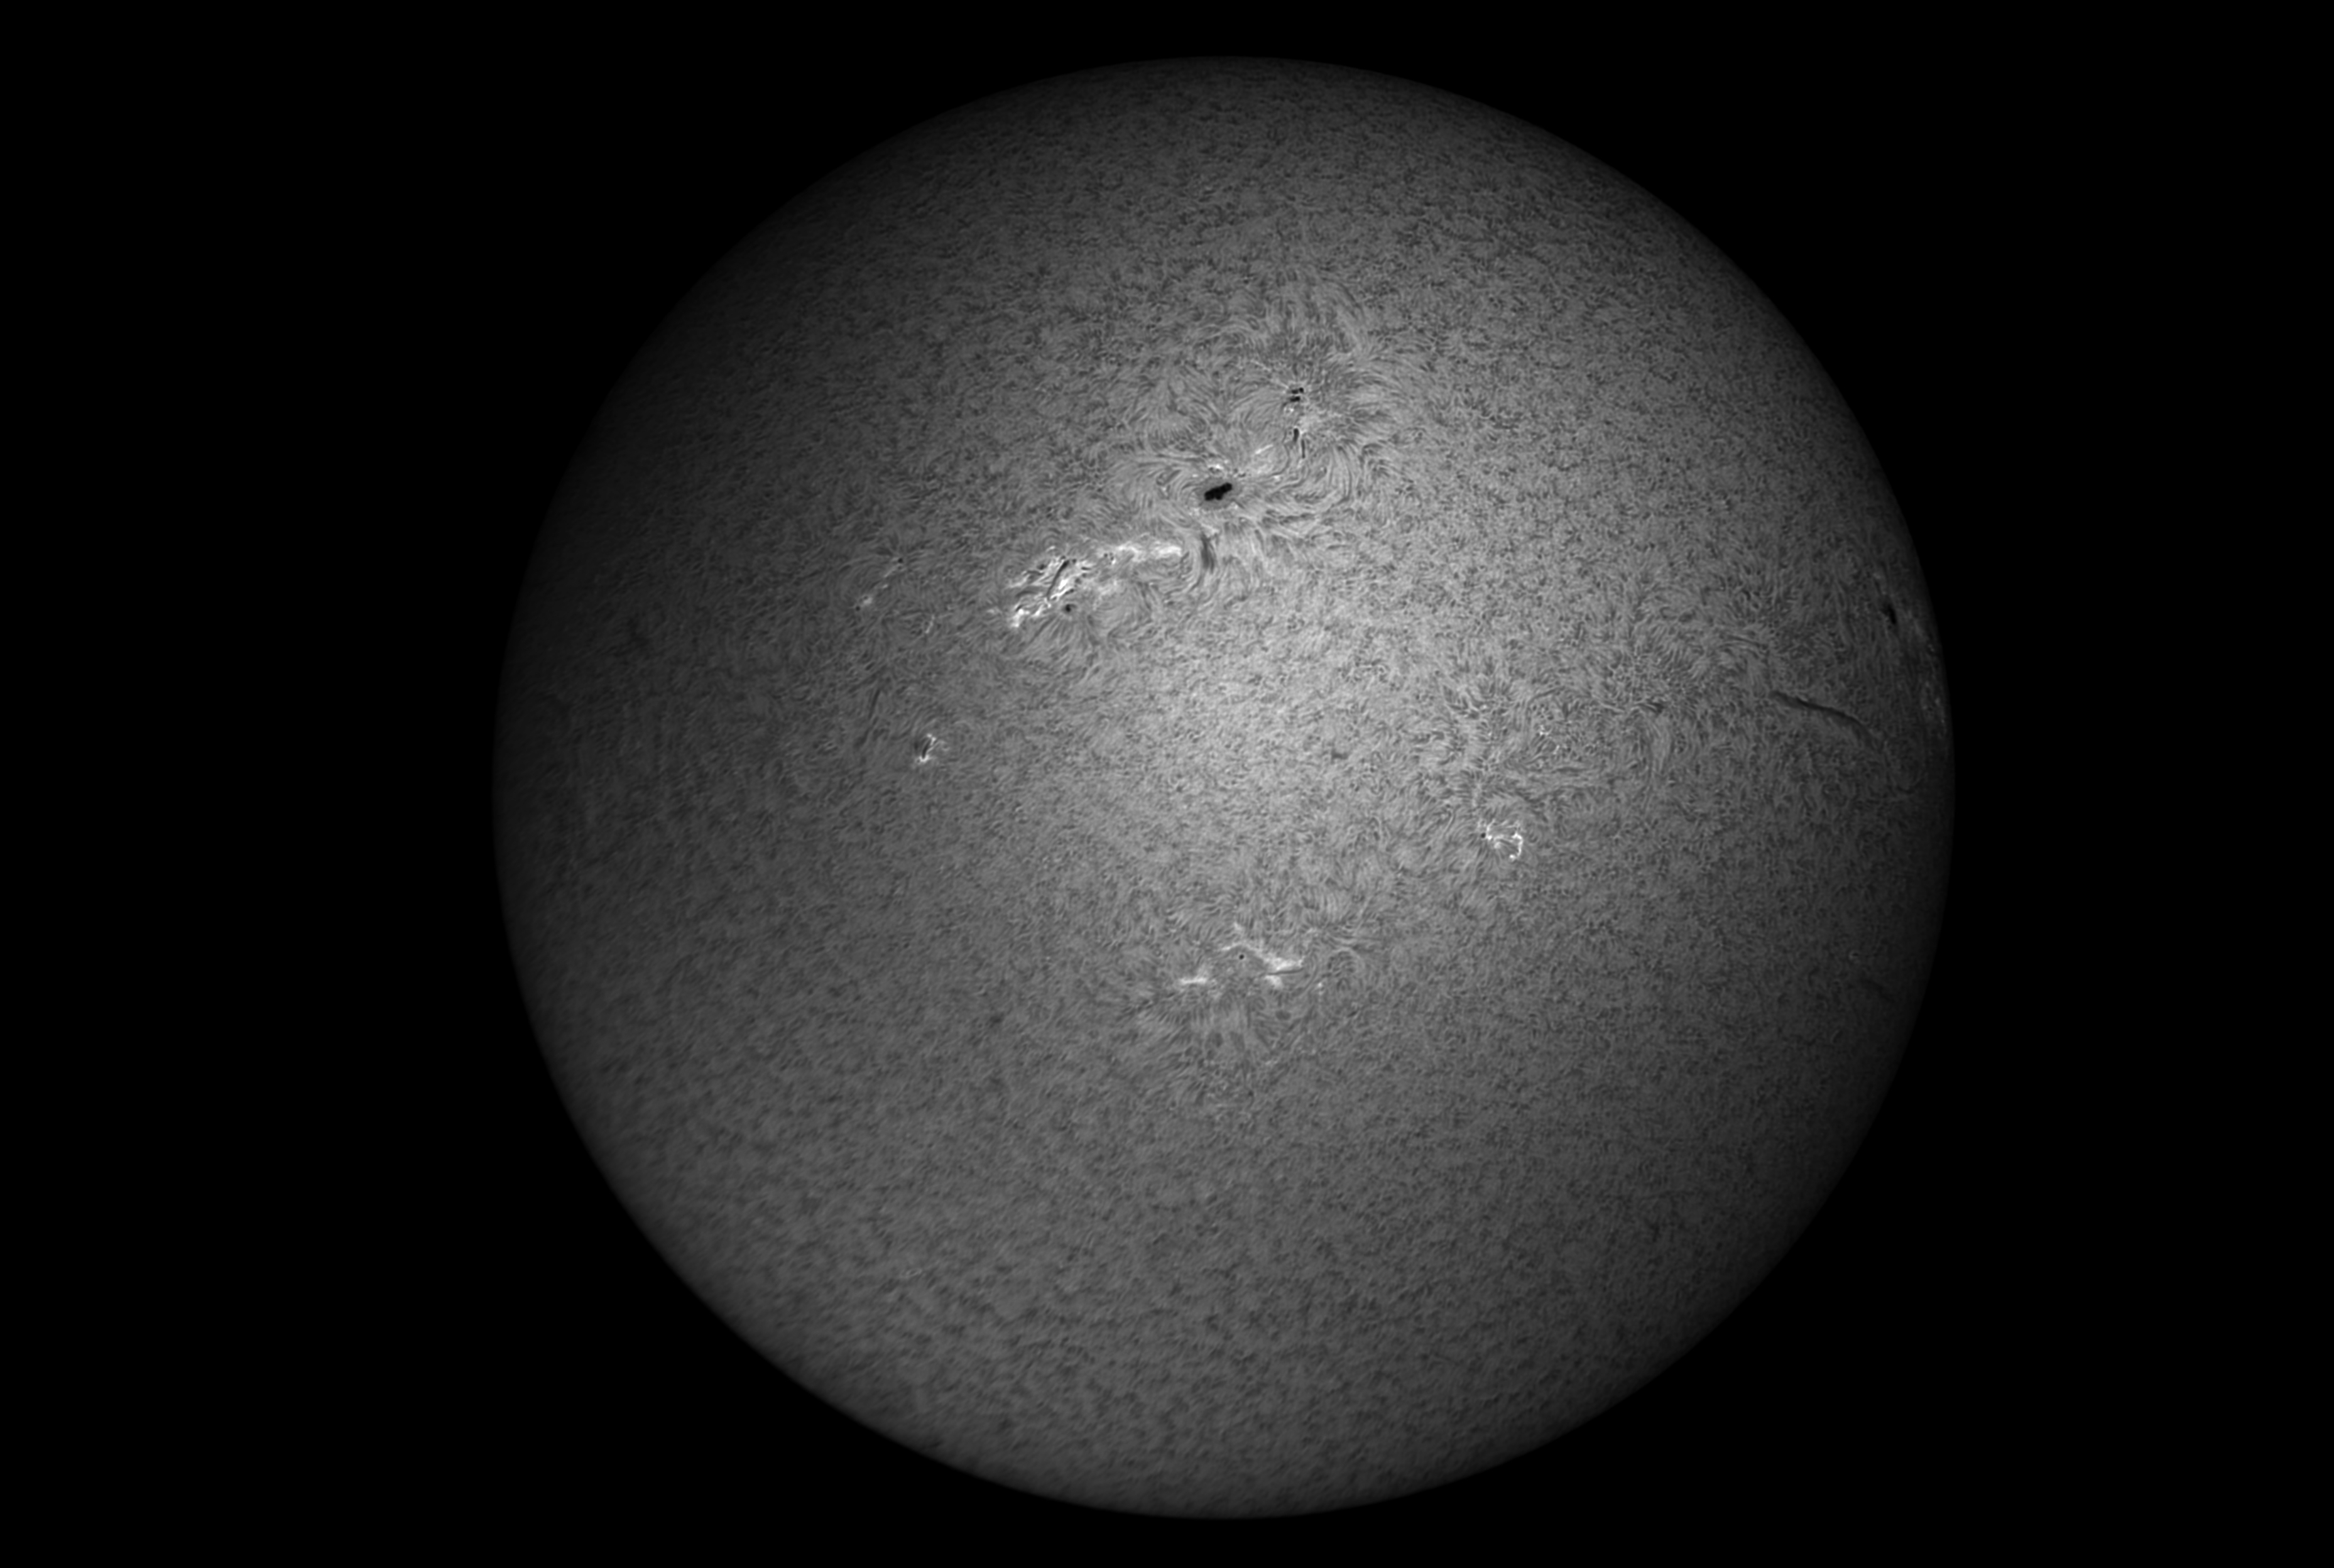 detailreiche schwarz-weiß Aufnahme der vollen Sonnenoberfläche vom 28.03.22